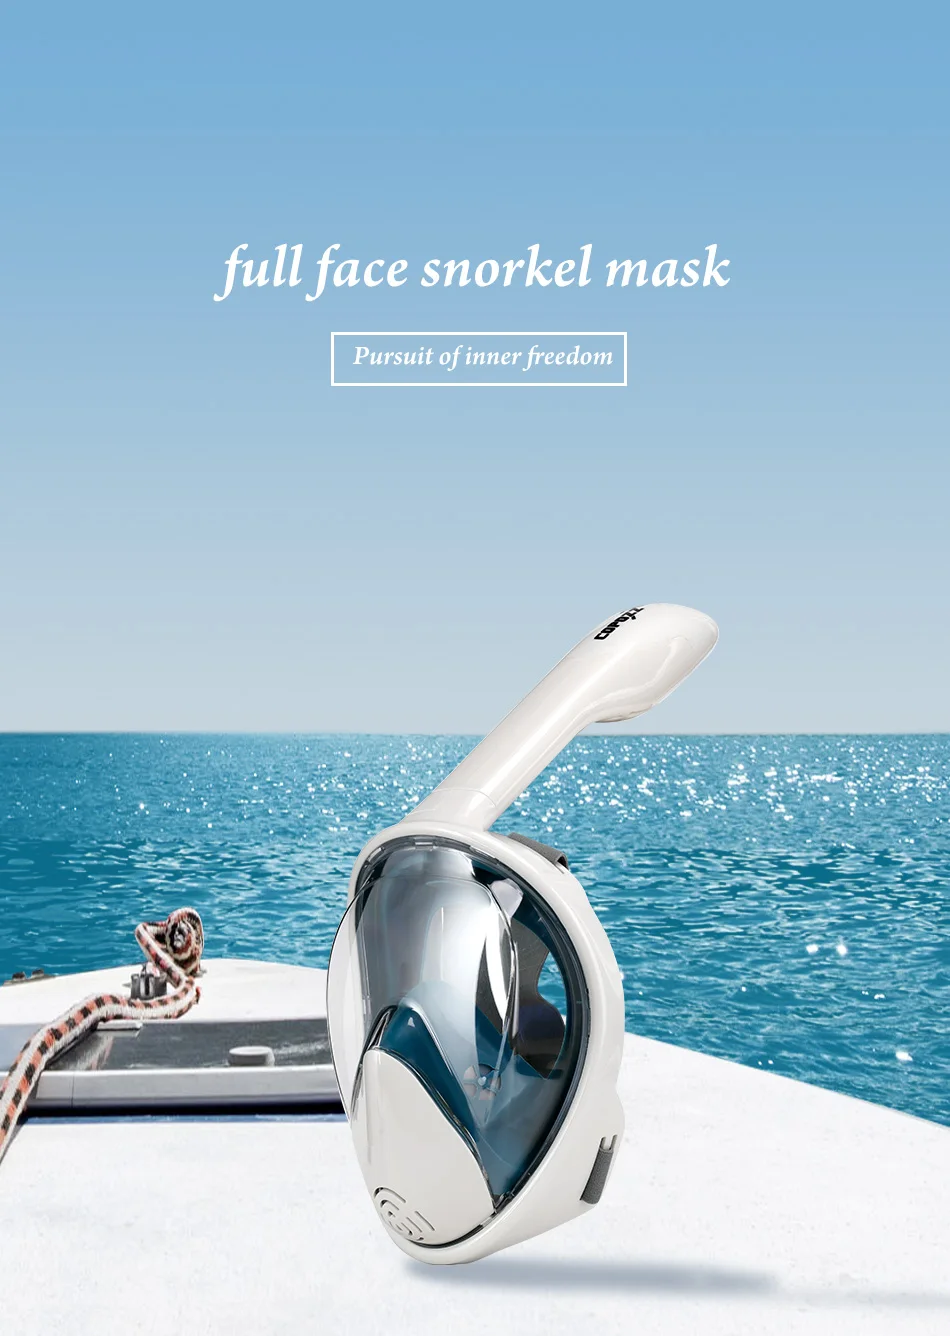 COPOZZ трубка Дайвинг маска полное лицо анти туман подводная трубка маска набор легкое дыхание плавание маска для Gopro экшн-камеры 2019